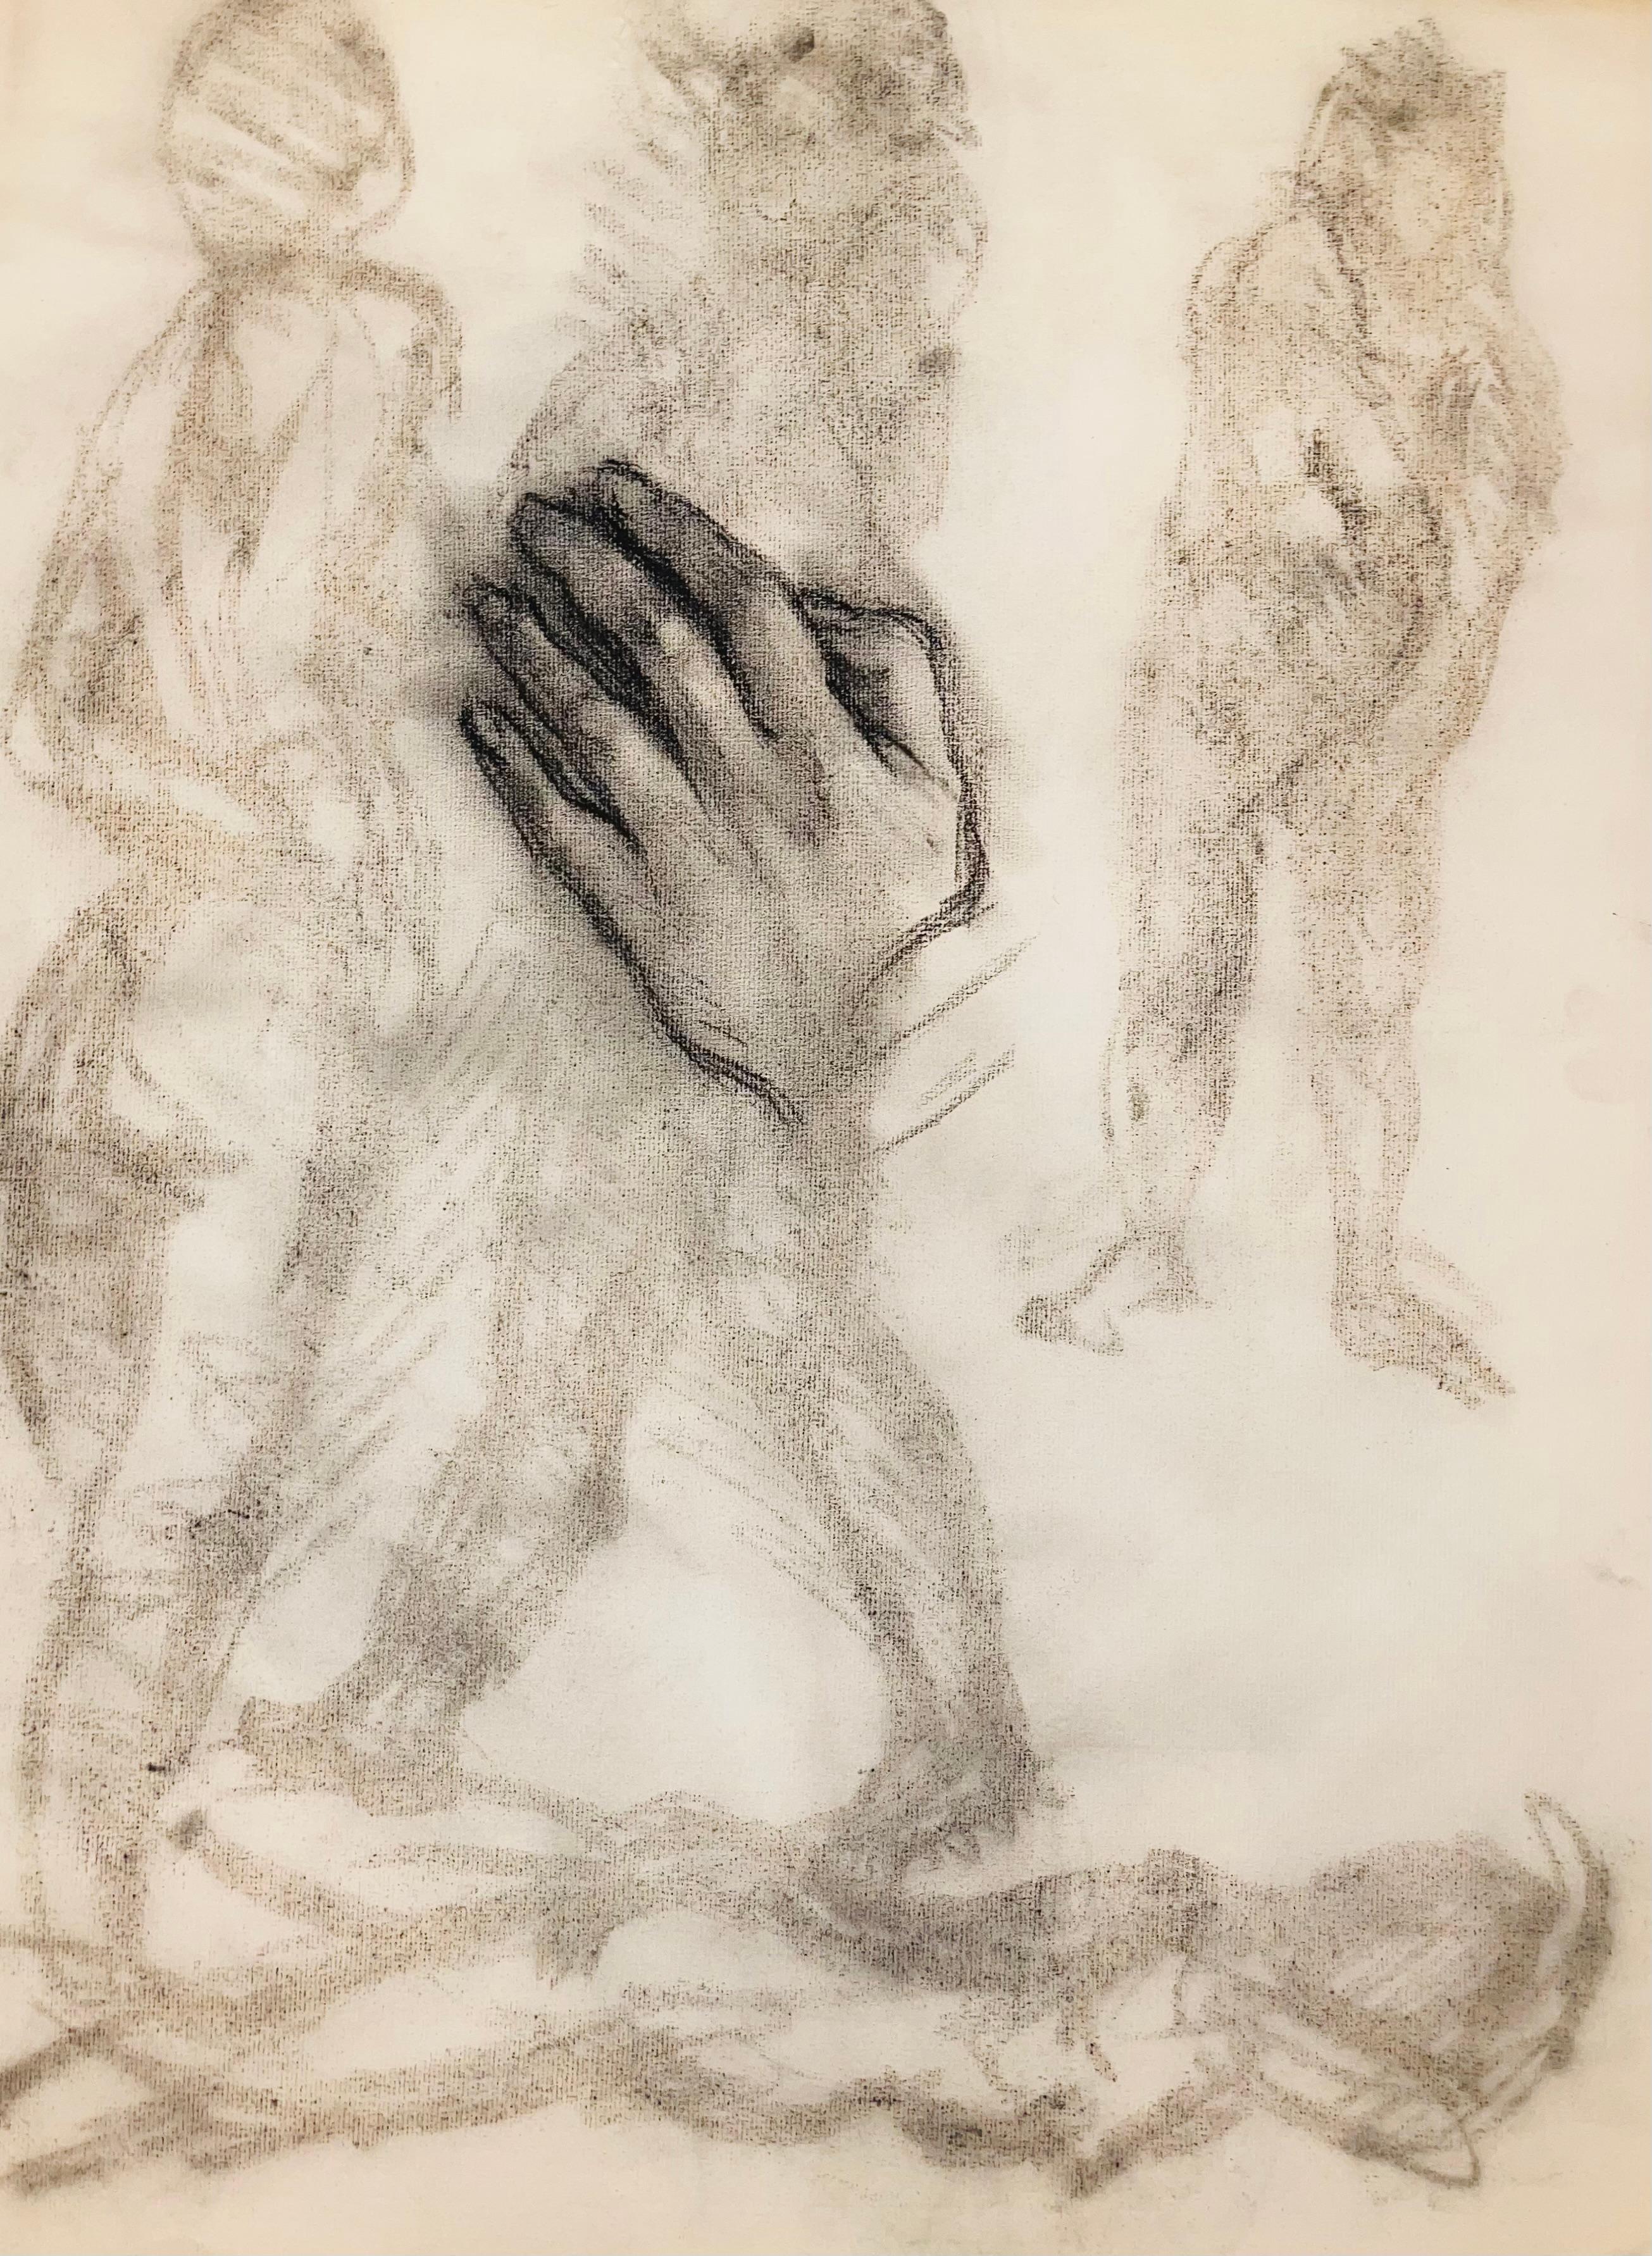 Ohne Titel (Renaissance-Hand und weibliche Aktstudie), 1963, Ian Hornak - Zeichnung